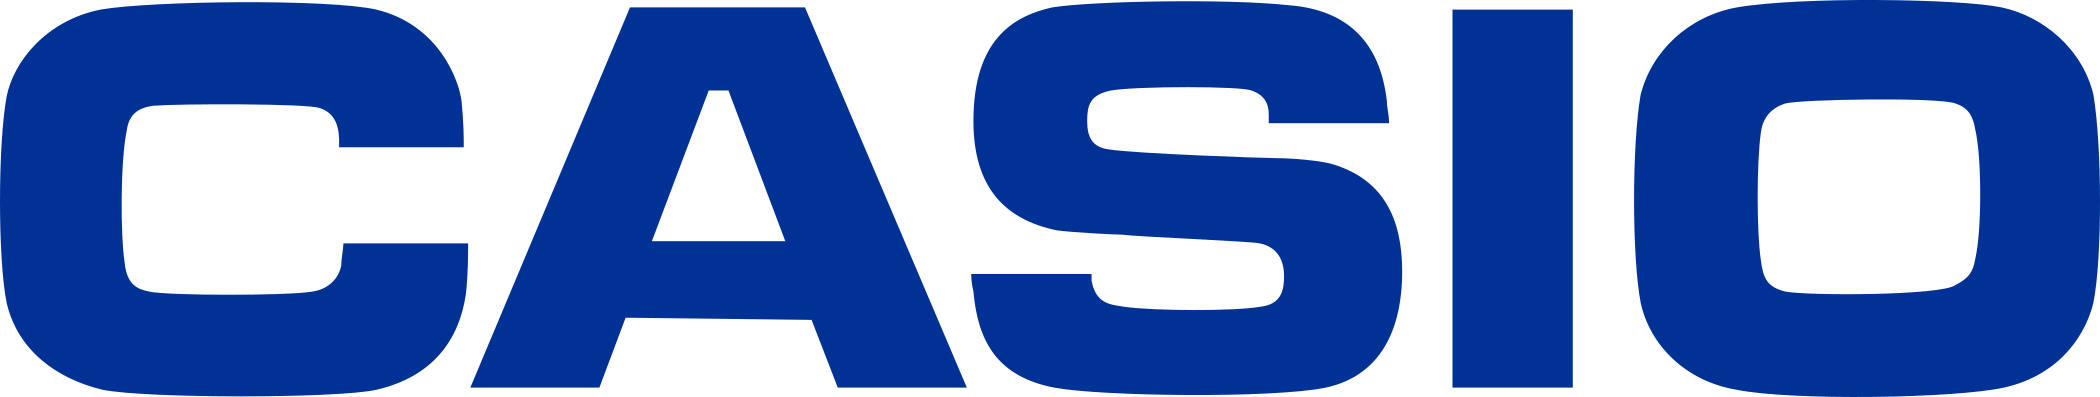 Casio Logo.